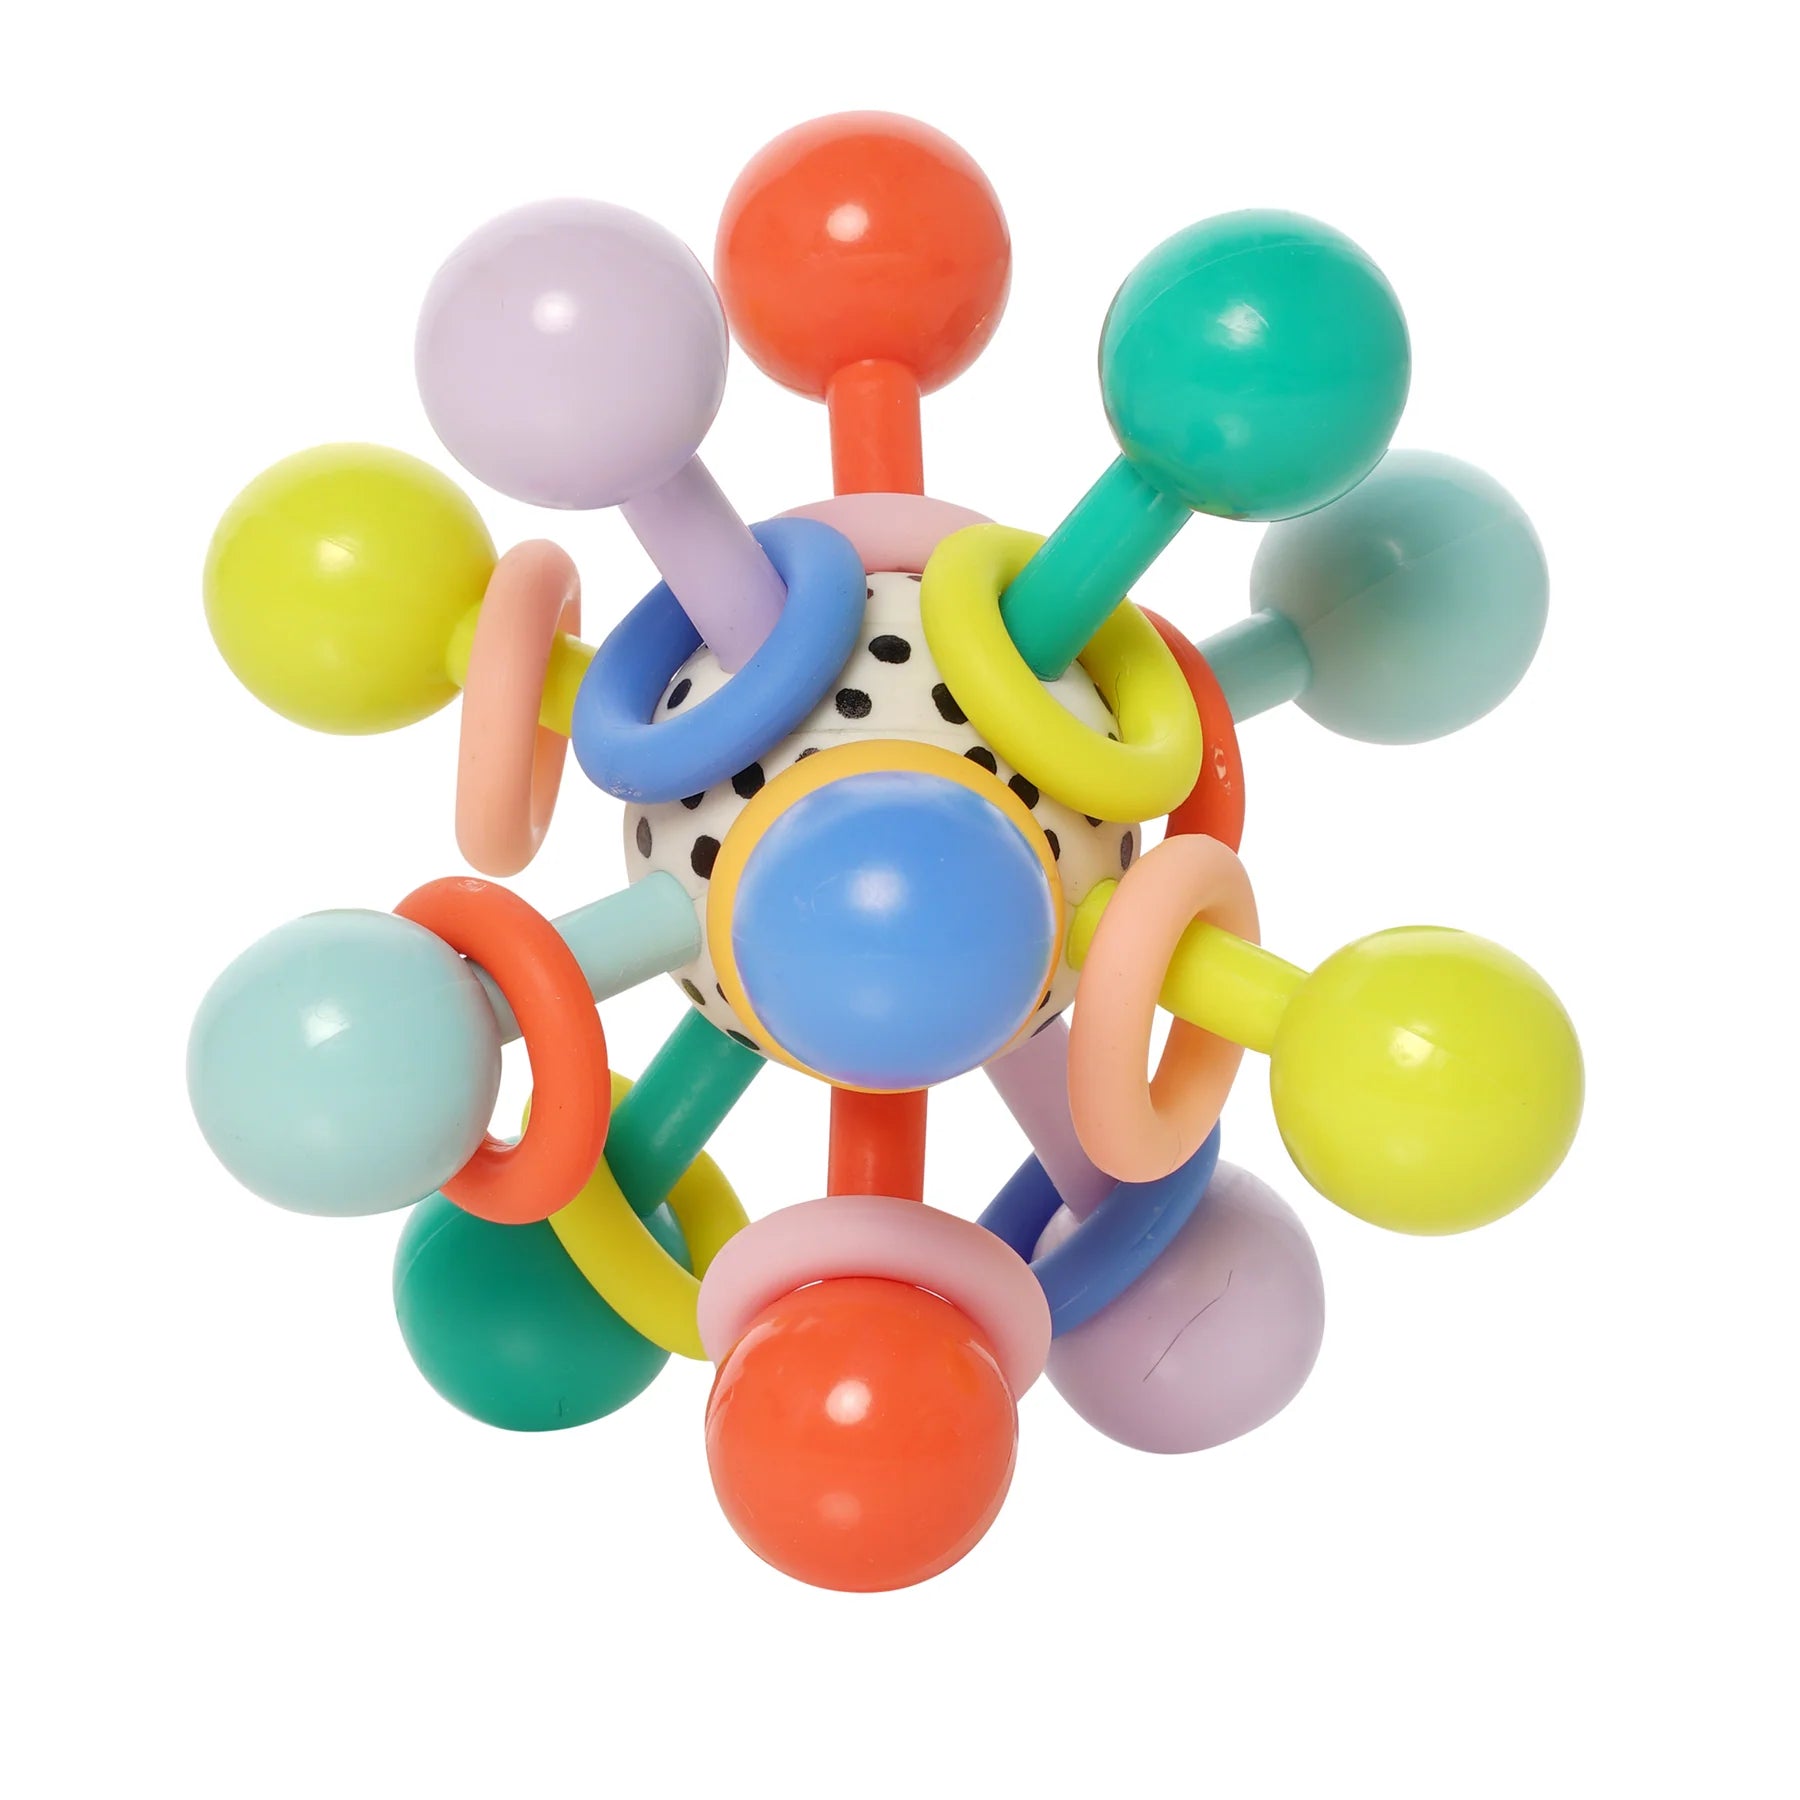 Manhattan Toy Atom Colorpop